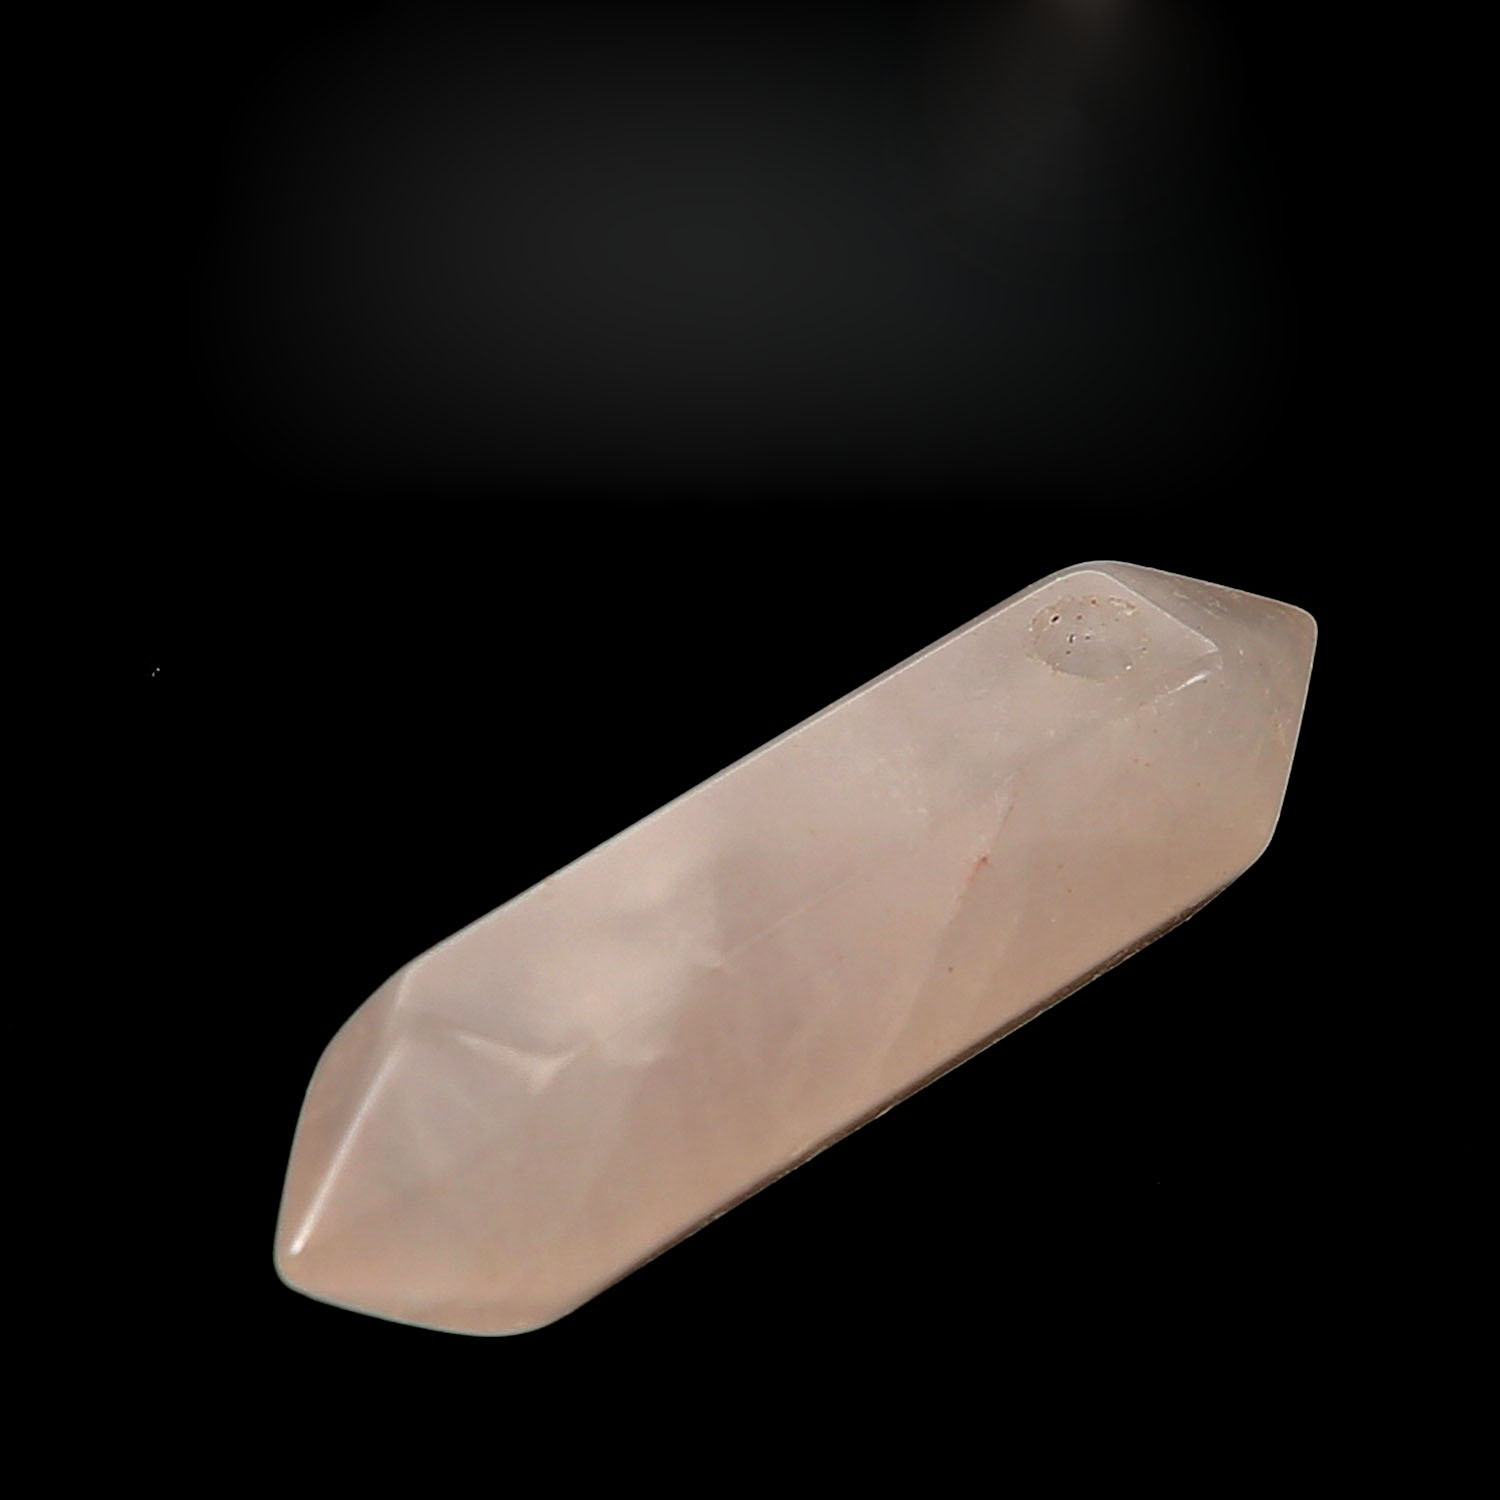 6:Pink crystal